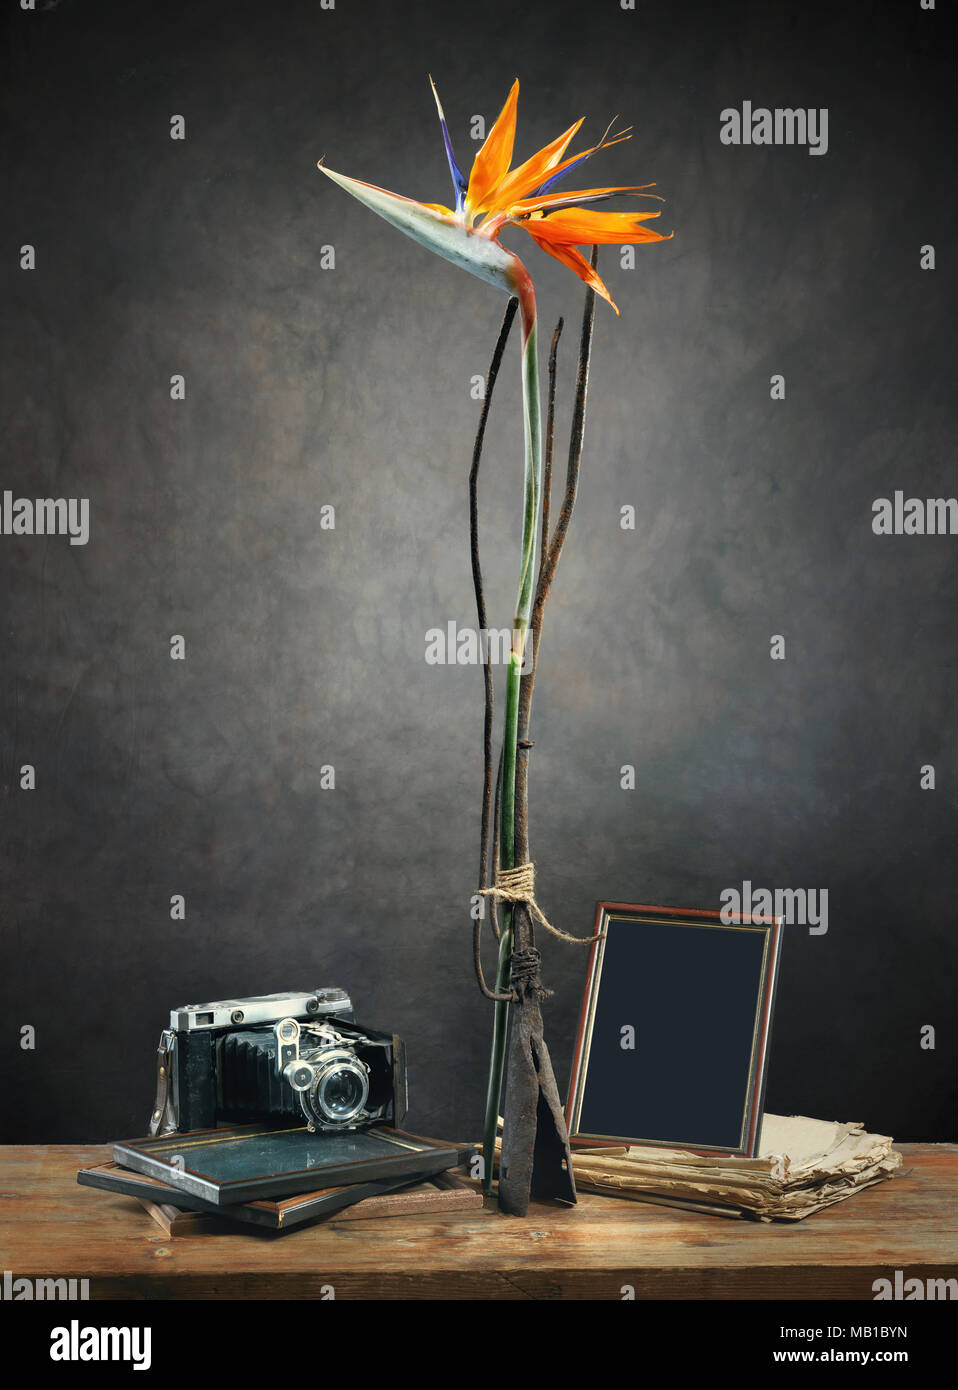 Exotische Blüte der Strelitzia reginae (Bird of paradise), vintage Pitchfork, alte Kamera, Bilderrahmen und alten Buch gegen den dunklen Hintergrund Stockfoto